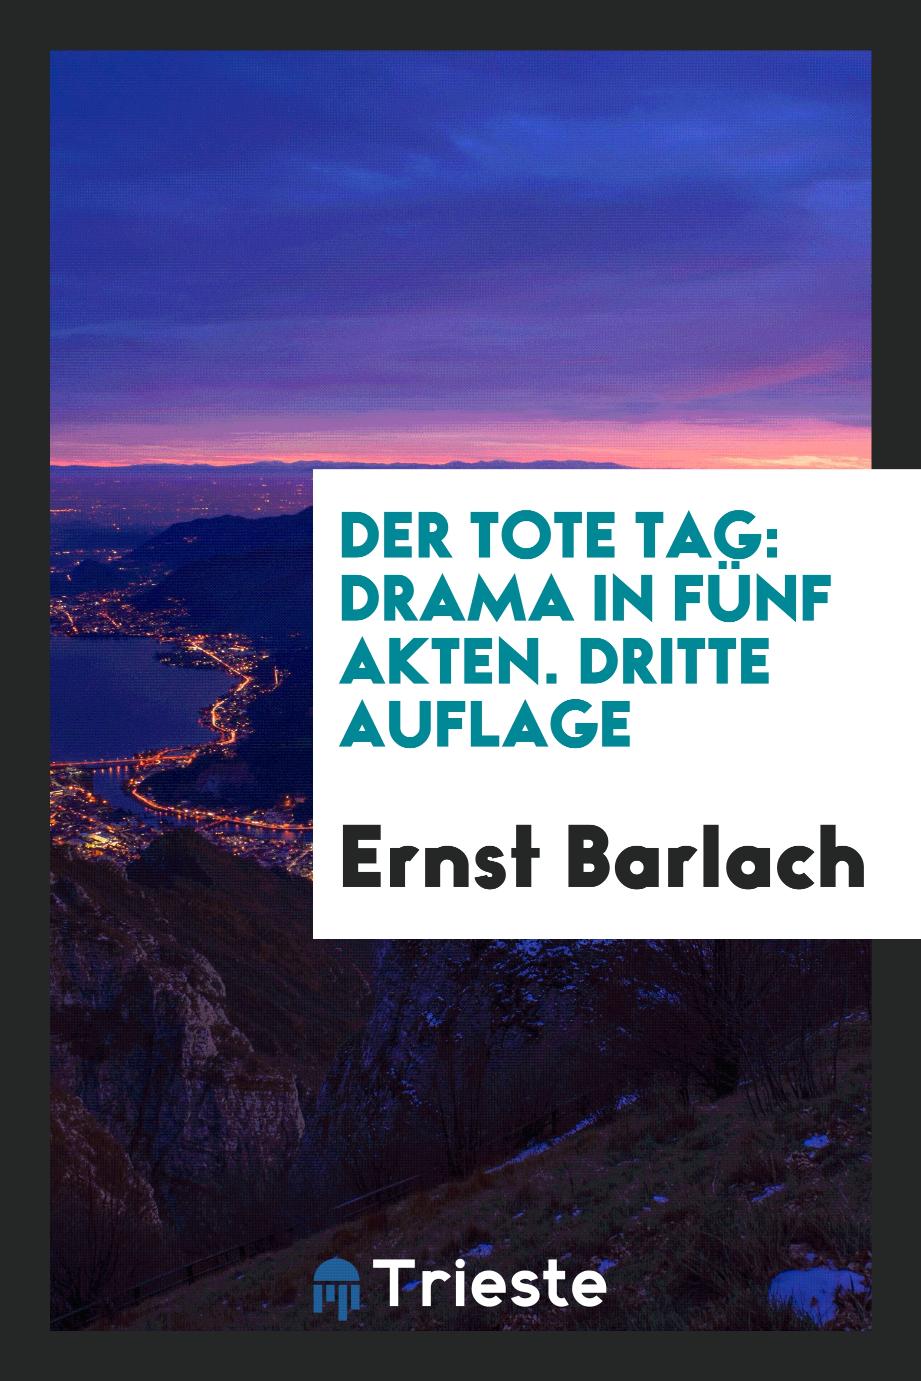 Ernst Barlach - Der Tote Tag: Drama in fünf Akten. Dritte Auflage